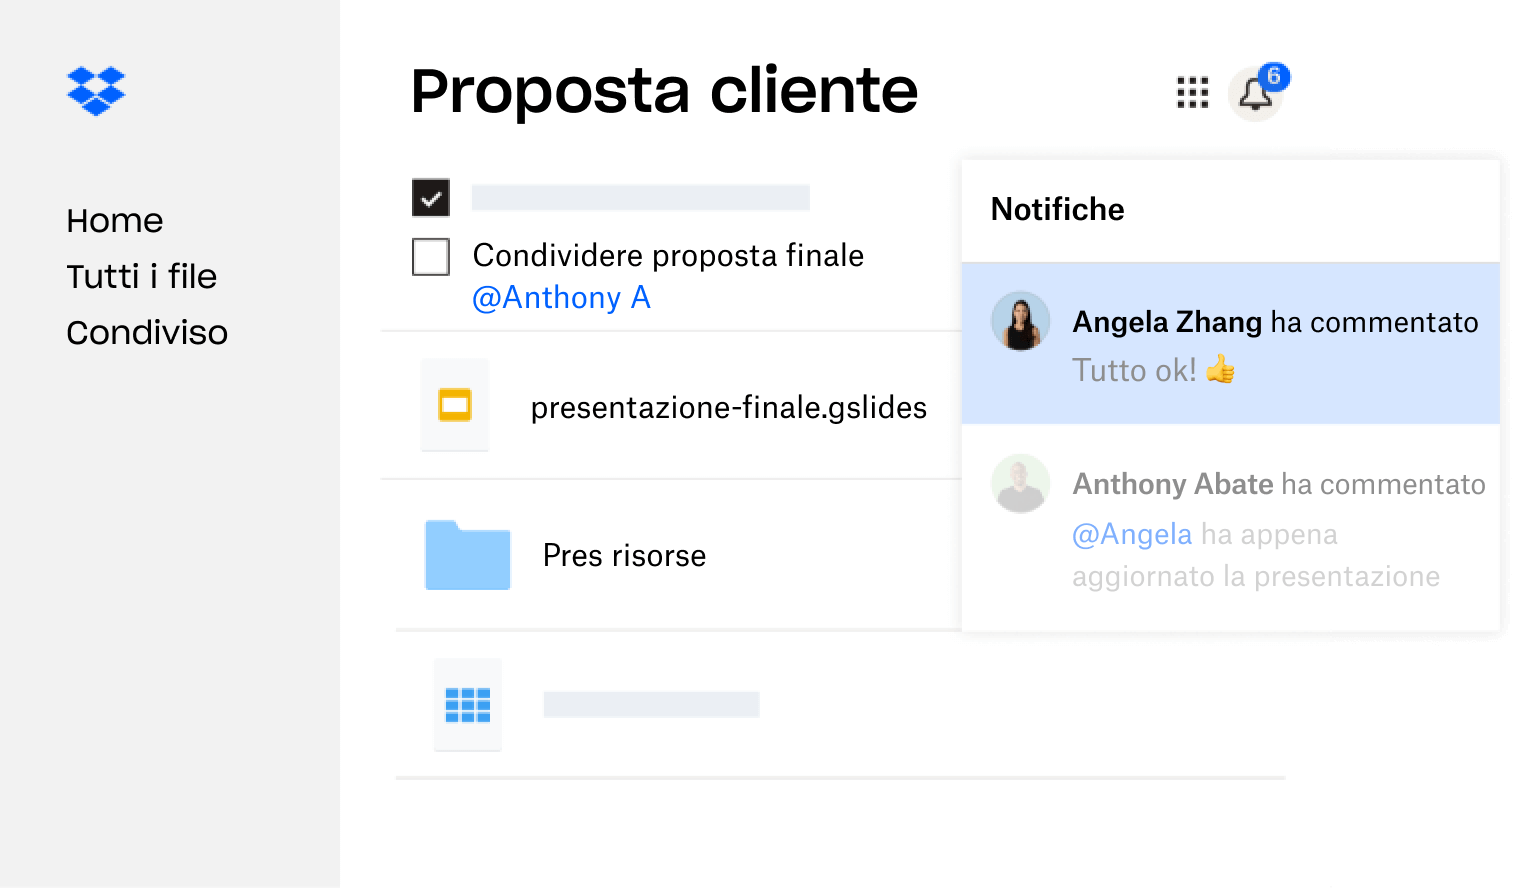 Una proposta per un cliente creata in Dropbox è stata condivisa con diversi utenti che hanno lasciato un feedback